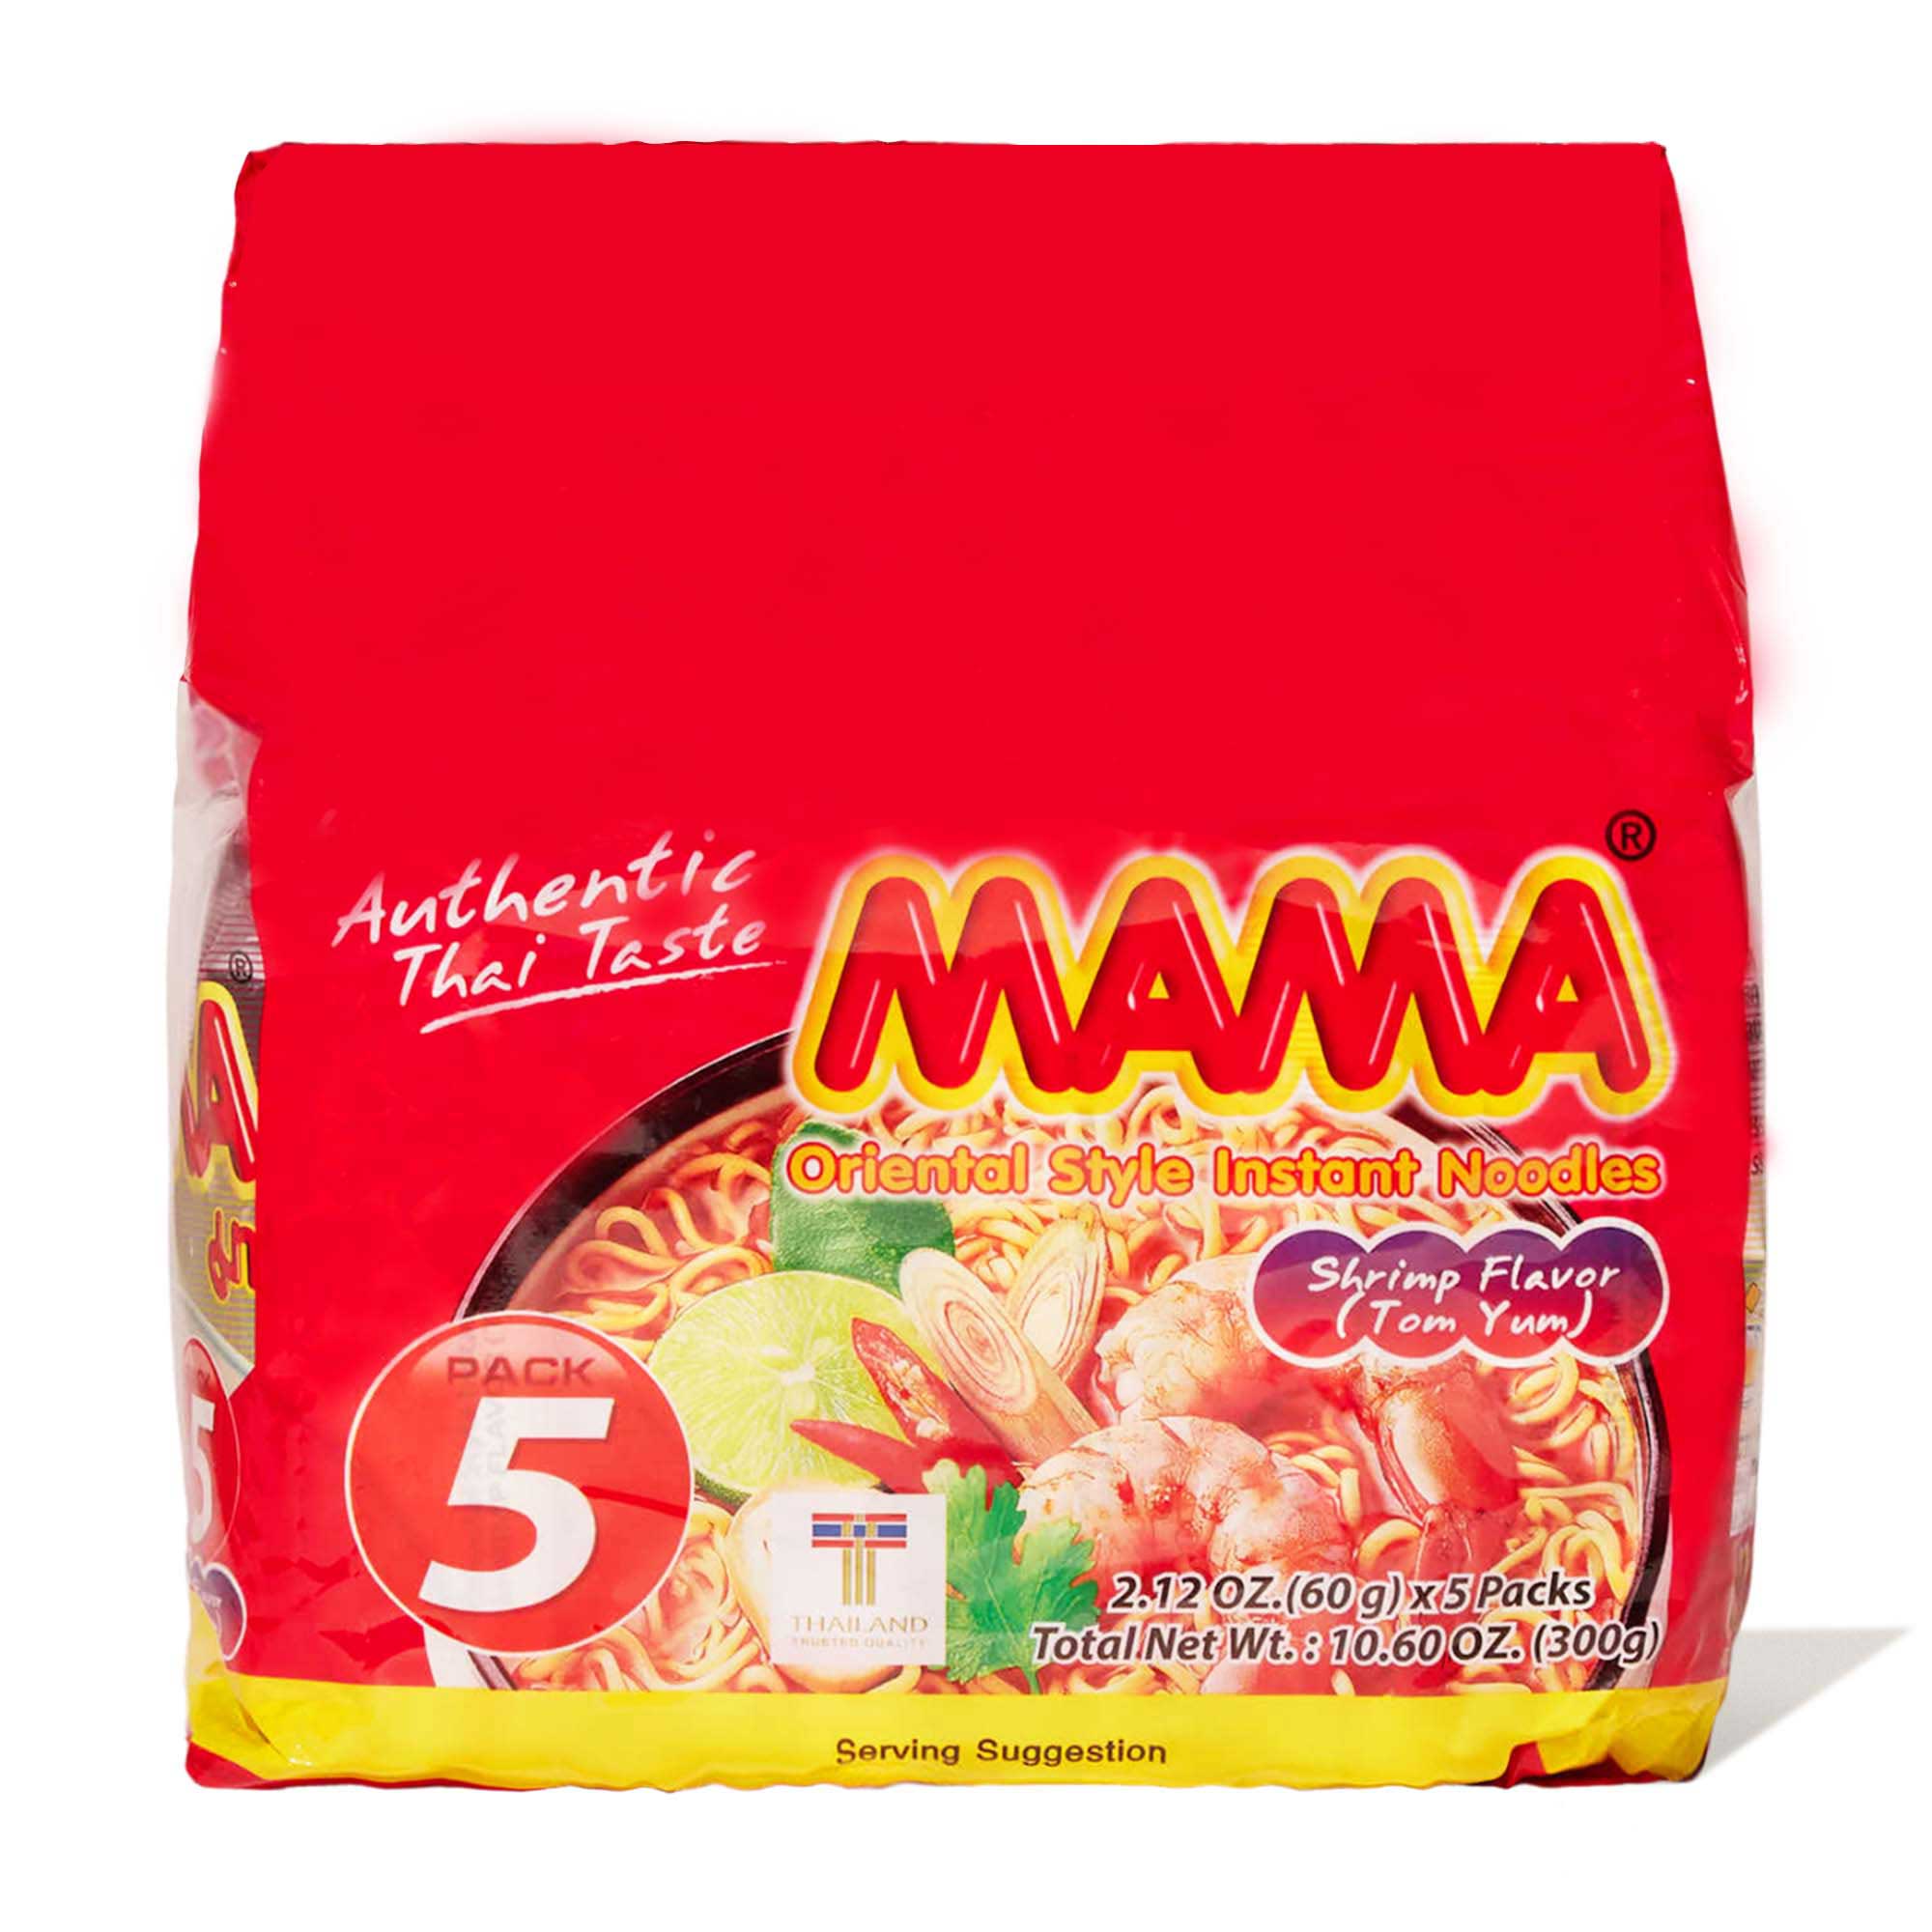 Mama - Instant Noodles Shrimp (Tom Yum) - 30 bags